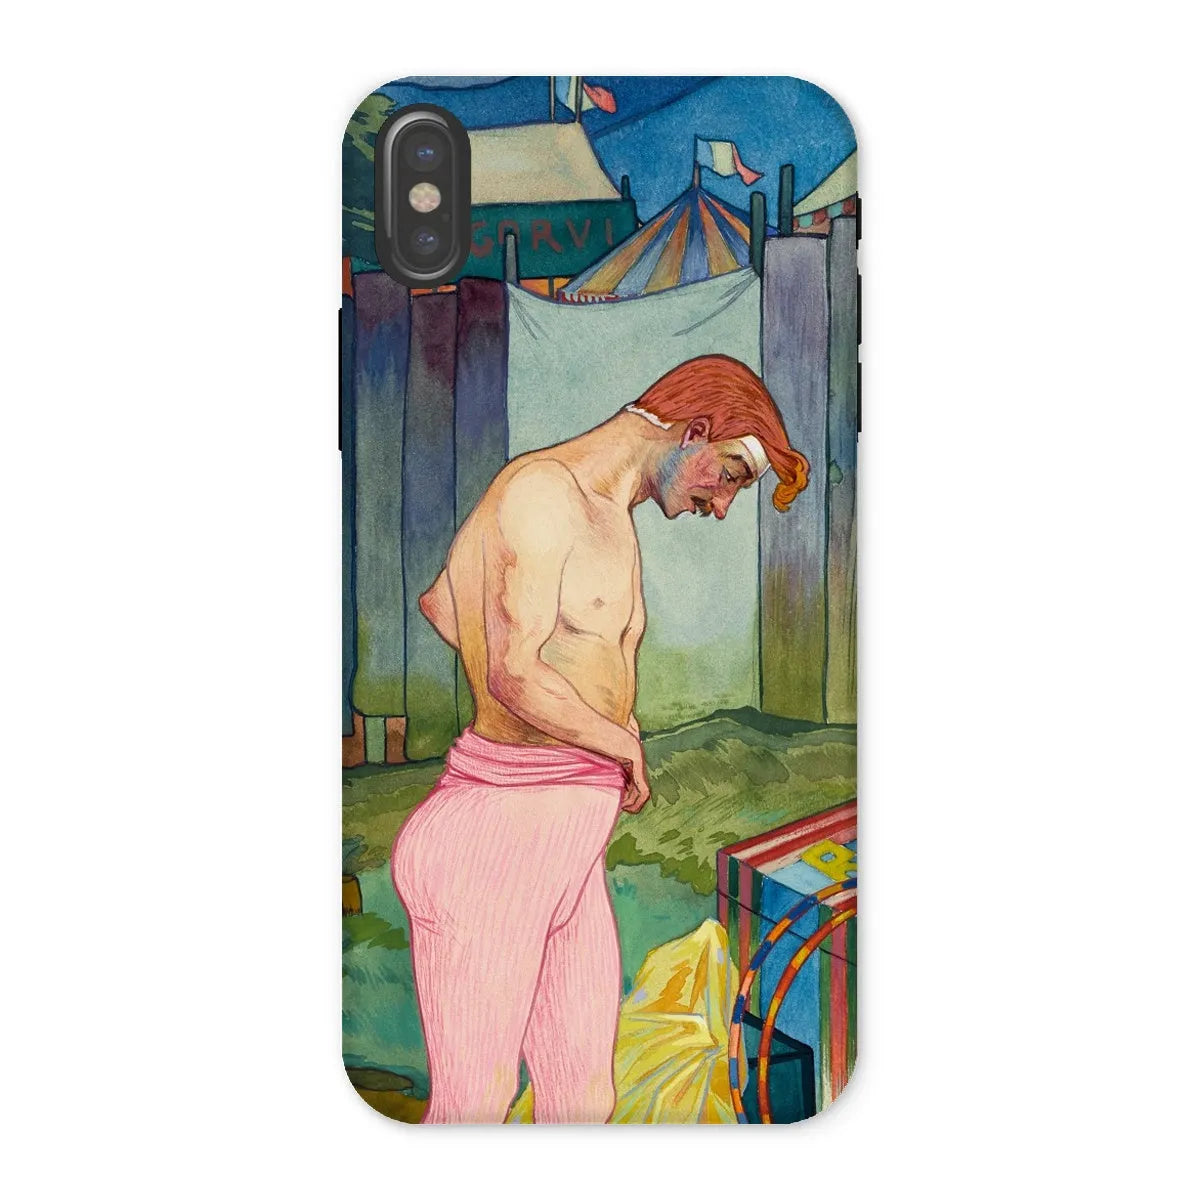 Le Cirque Corvi - French Art Phone Case - Georges De Feure - Iphone x / Matte - Mobile Phone Cases - Aesthetic Art